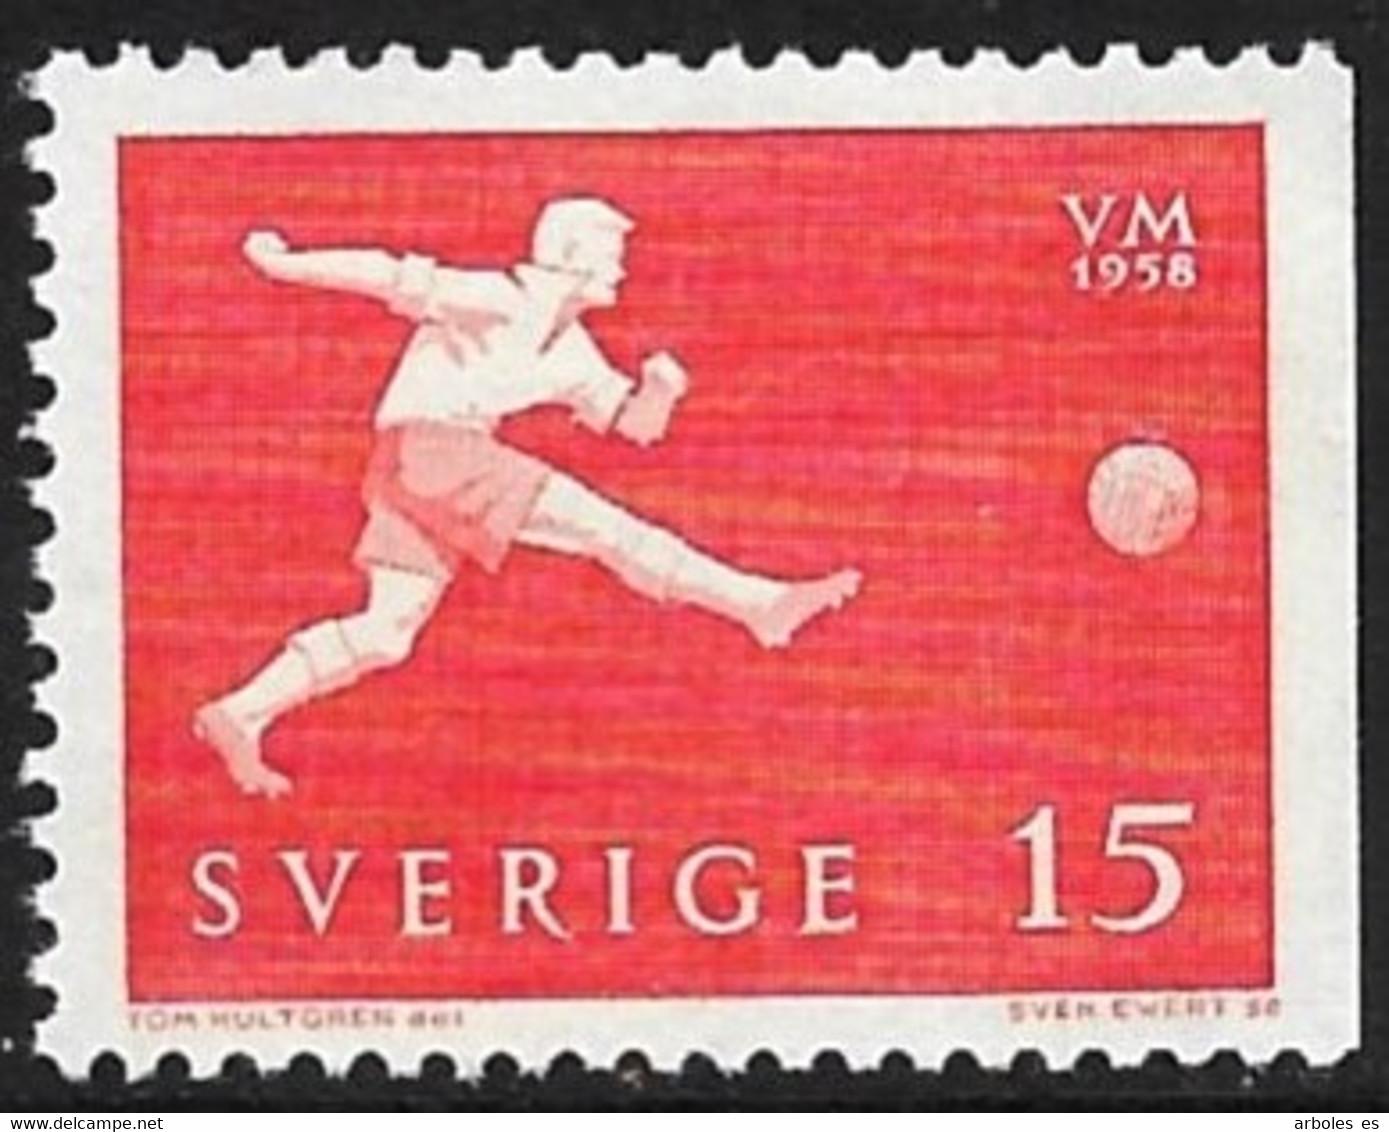 SUECIA - MUNDIAL DE FUTBOL - AÑO 1958 - CATALOGO YVERT Nº 0429 - NUEVOS - Unused Stamps